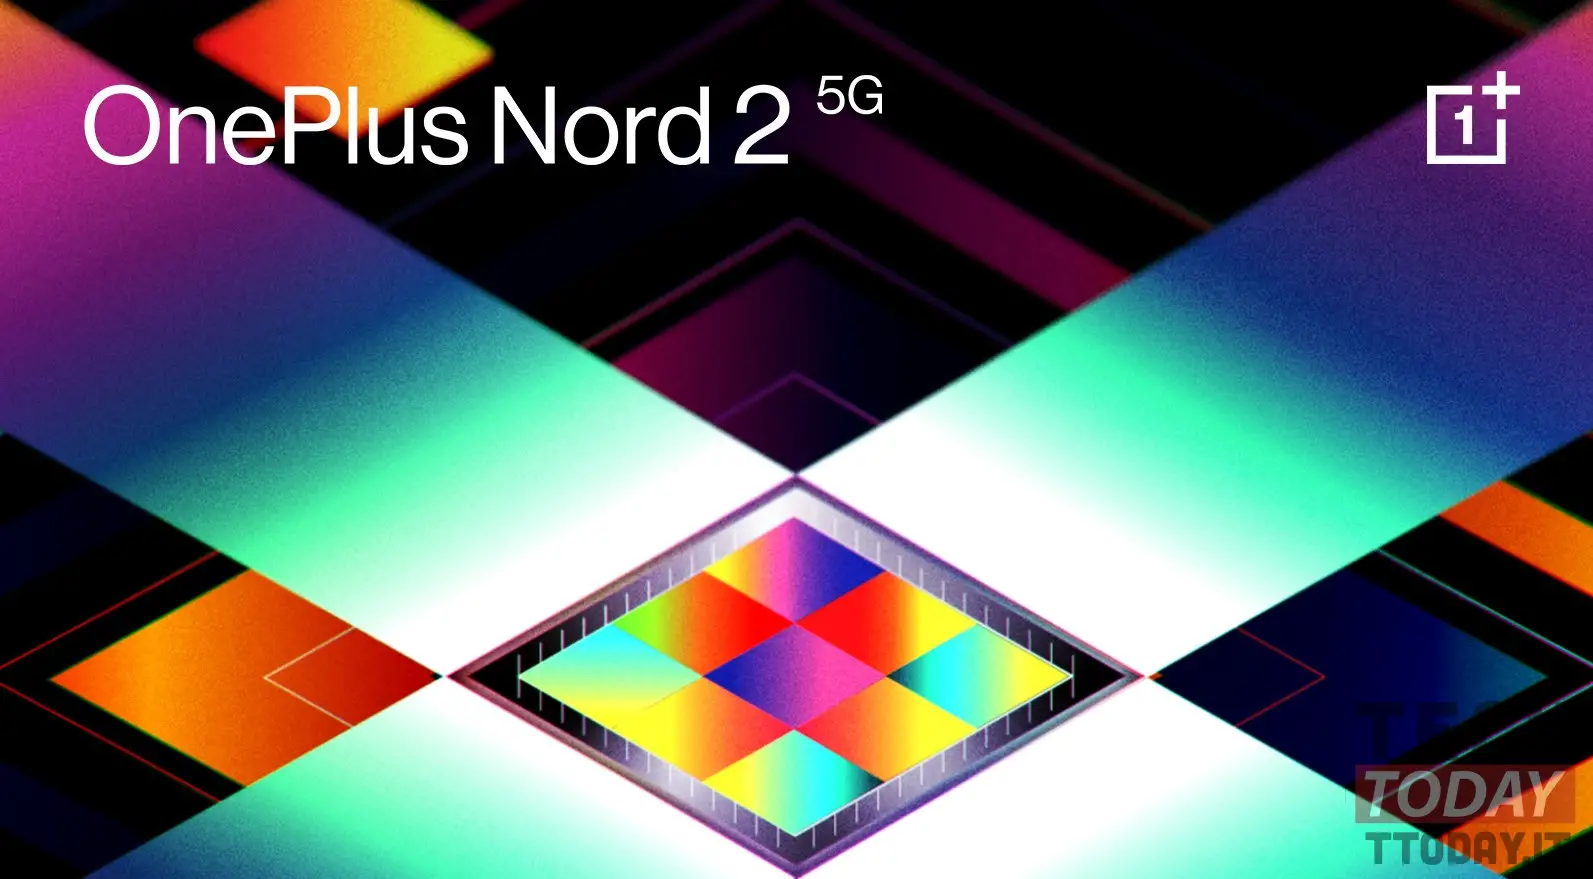 OnePlus Utara 2 5G